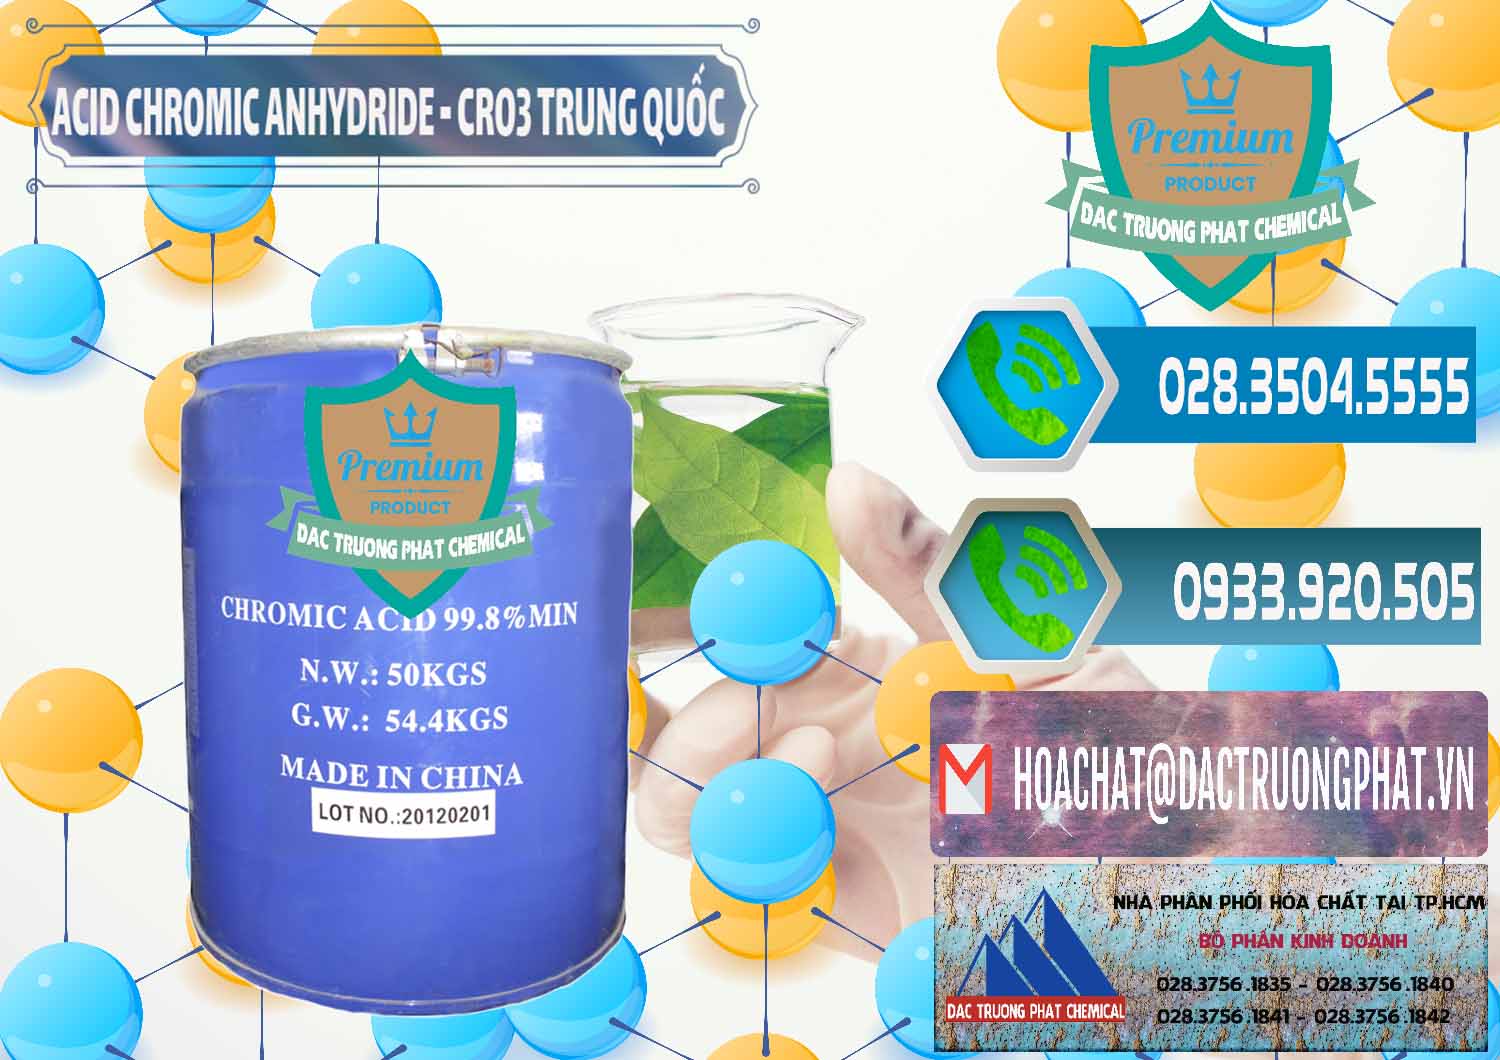 Nhà phân phối & bán Acid Chromic Anhydride - Cromic CRO3 Trung Quốc China - 0007 - Đơn vị phân phối & cung cấp hóa chất tại TP.HCM - congtyhoachat.net